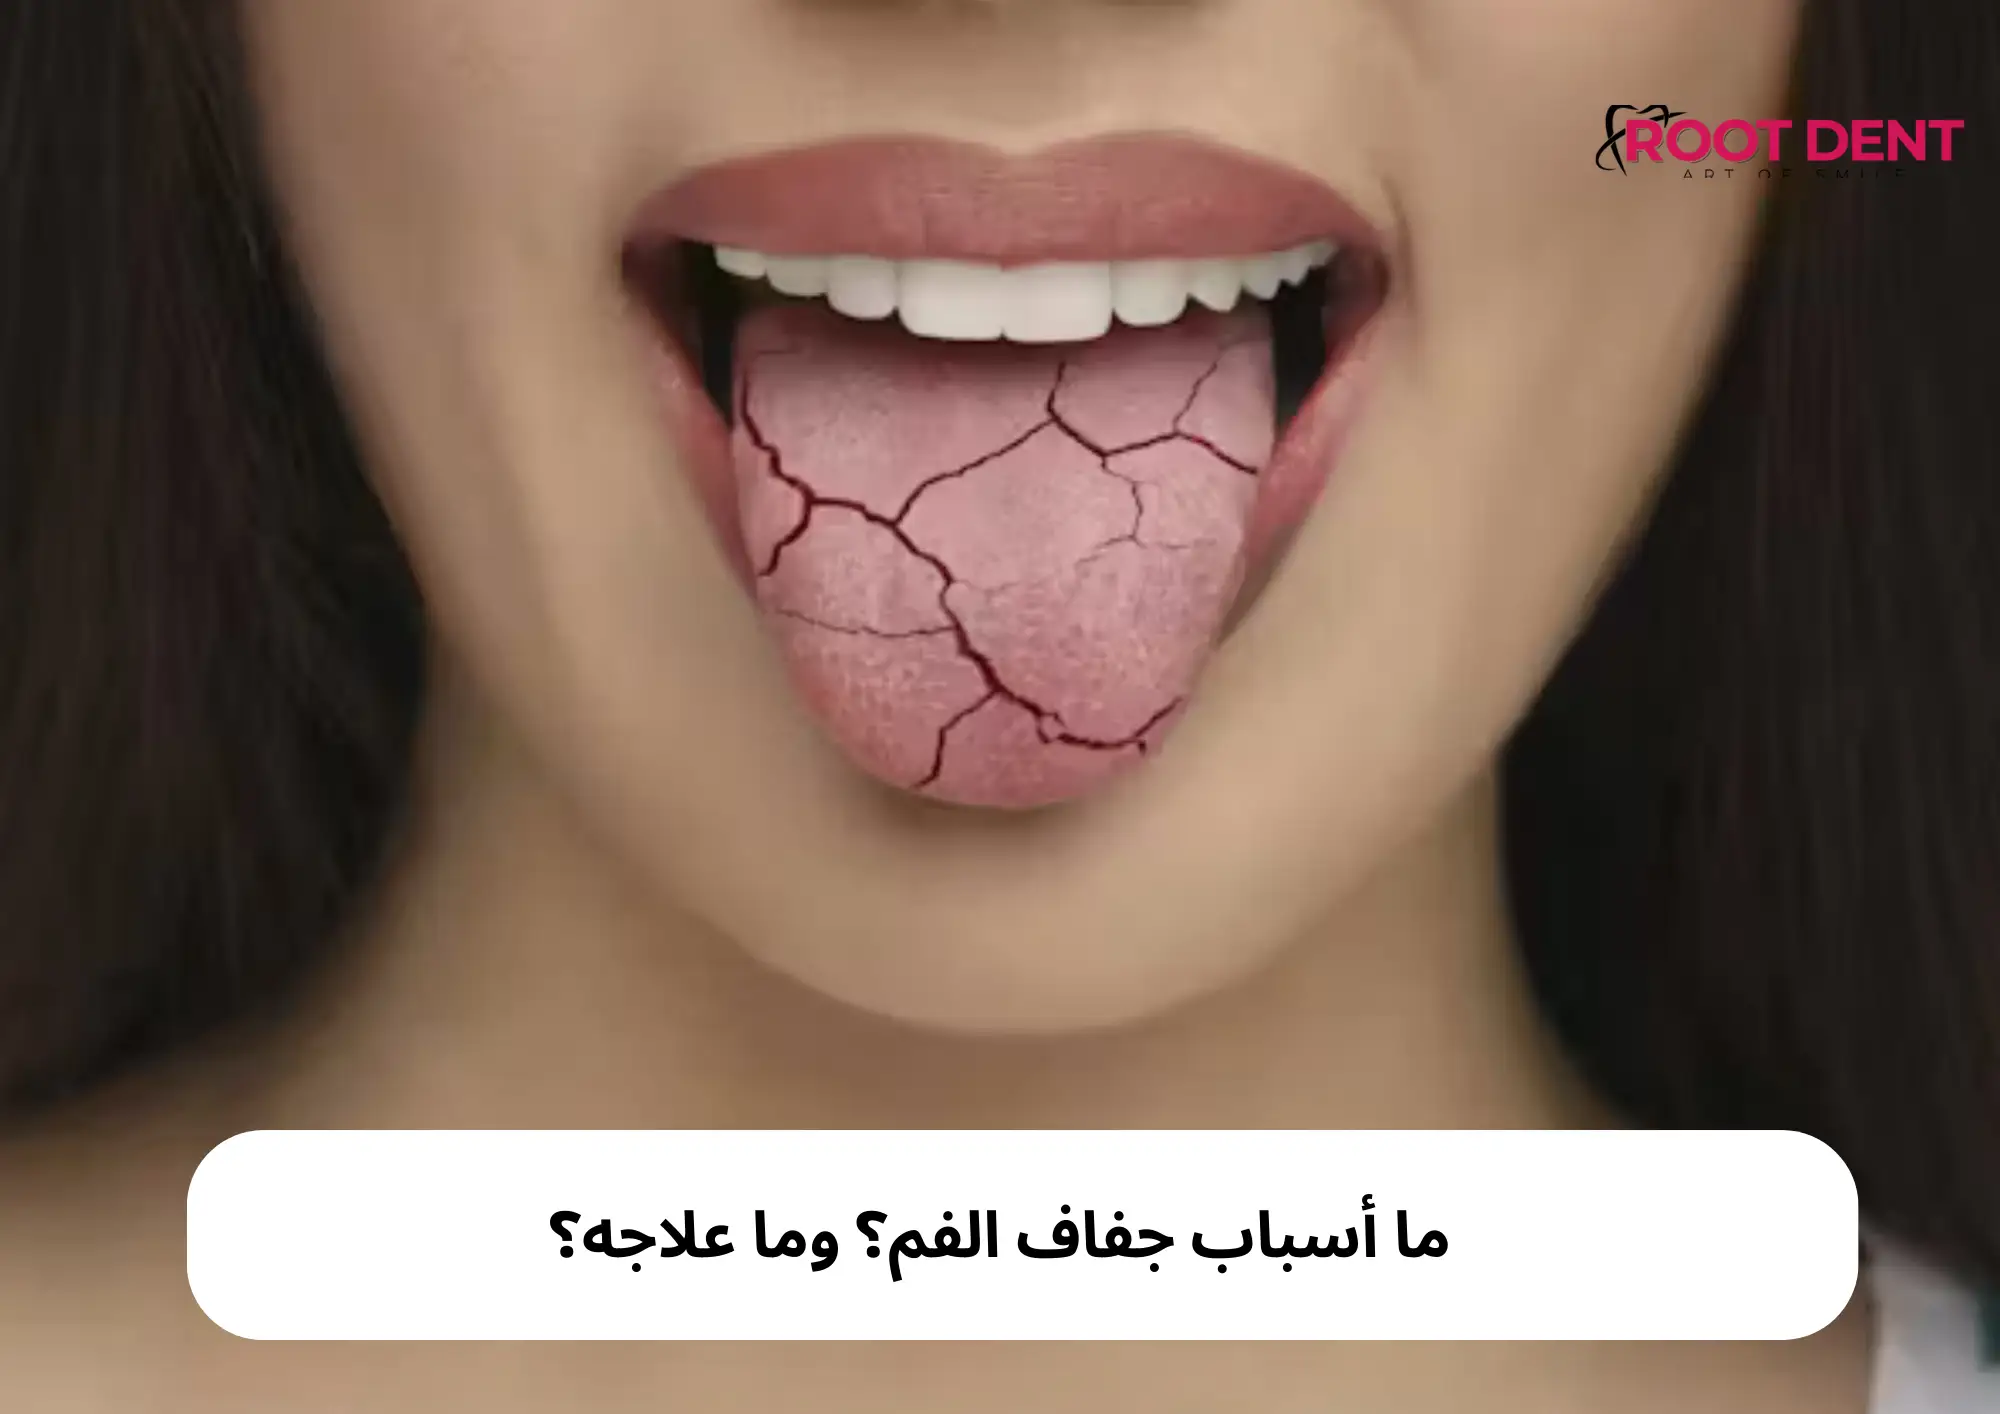 ما أسباب جفاف الفم؟ وما علاجه؟